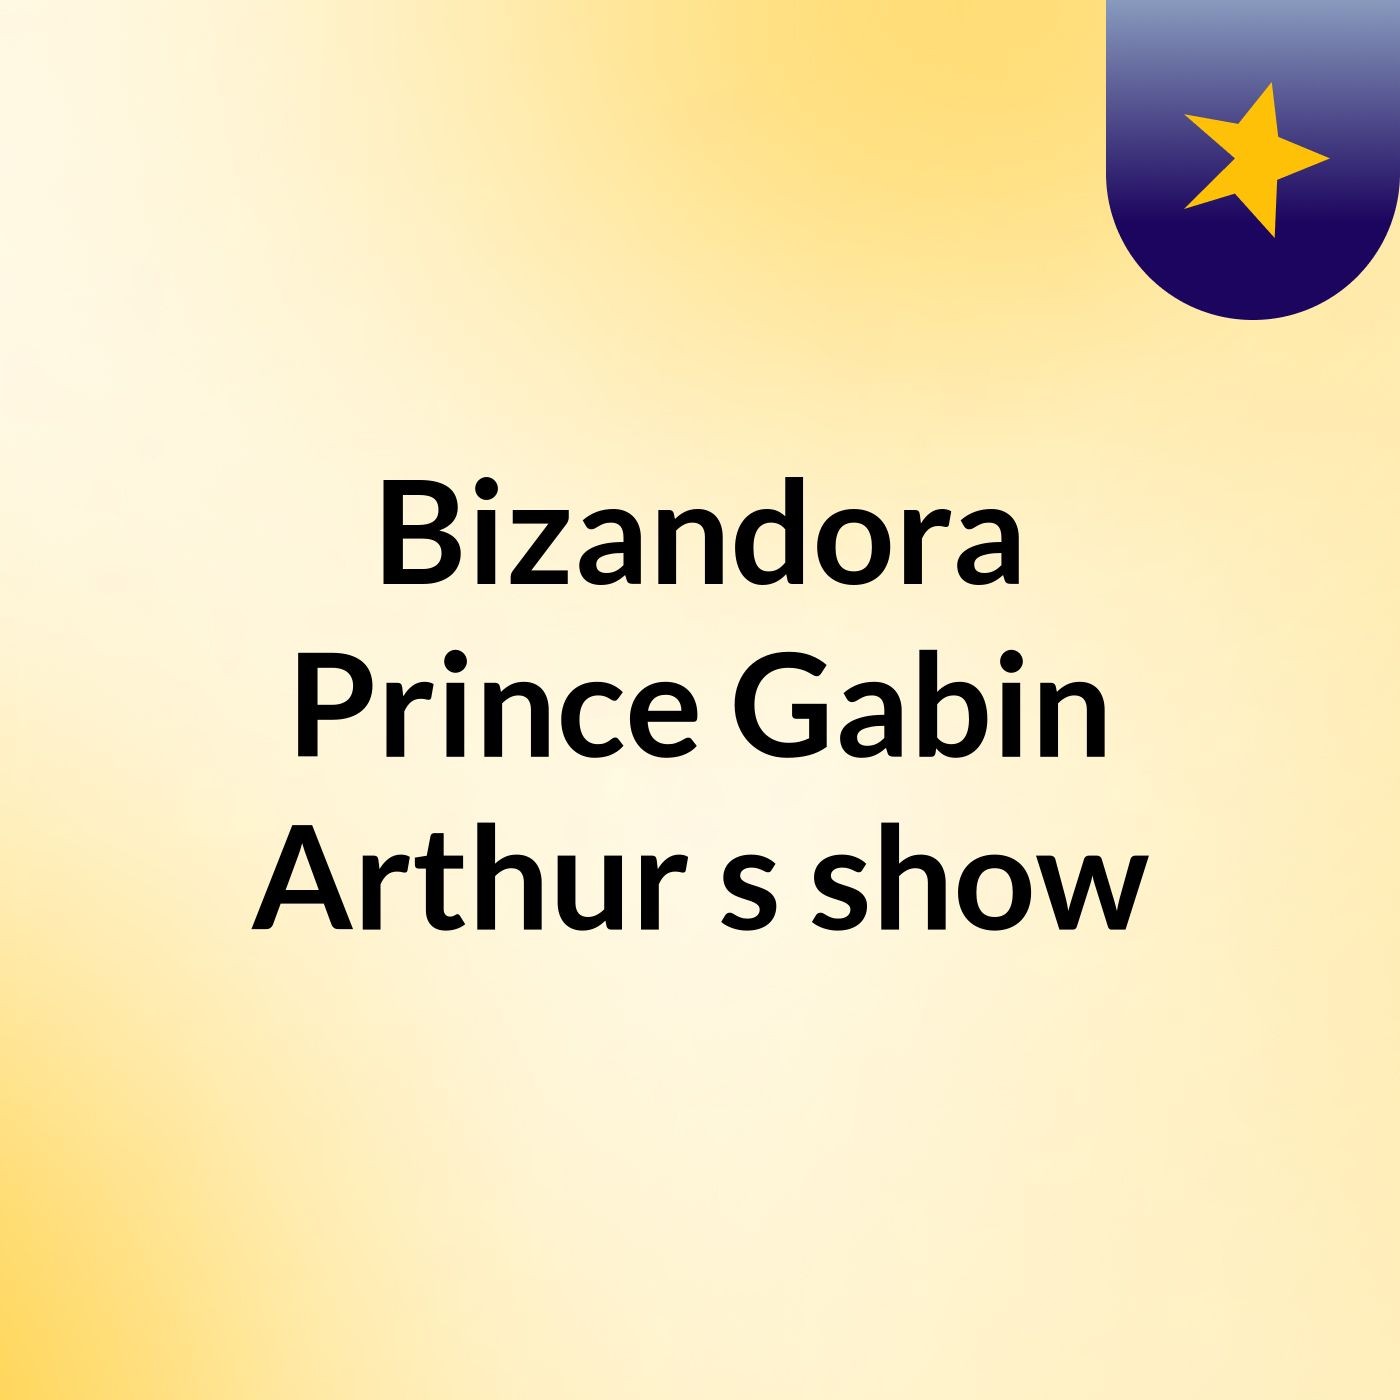 Episode 2 - Bizandora Prince Gabin Arthur's show